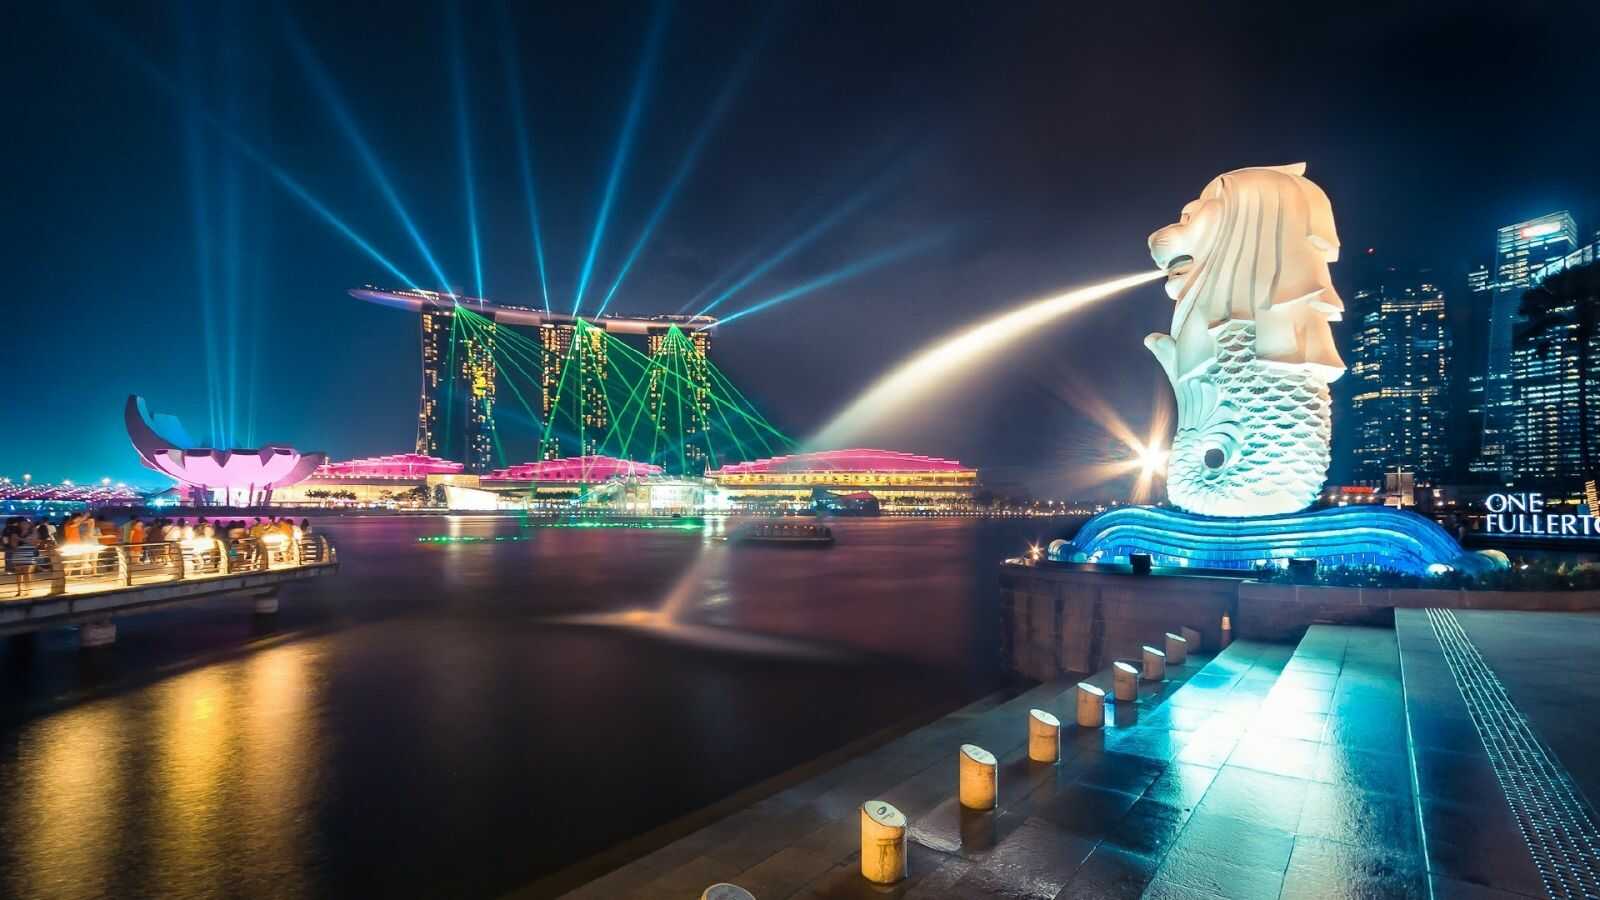 Du lịch Singapore - Batam - Malaysia 6 ngày 5 đêm từ Sài Gòn